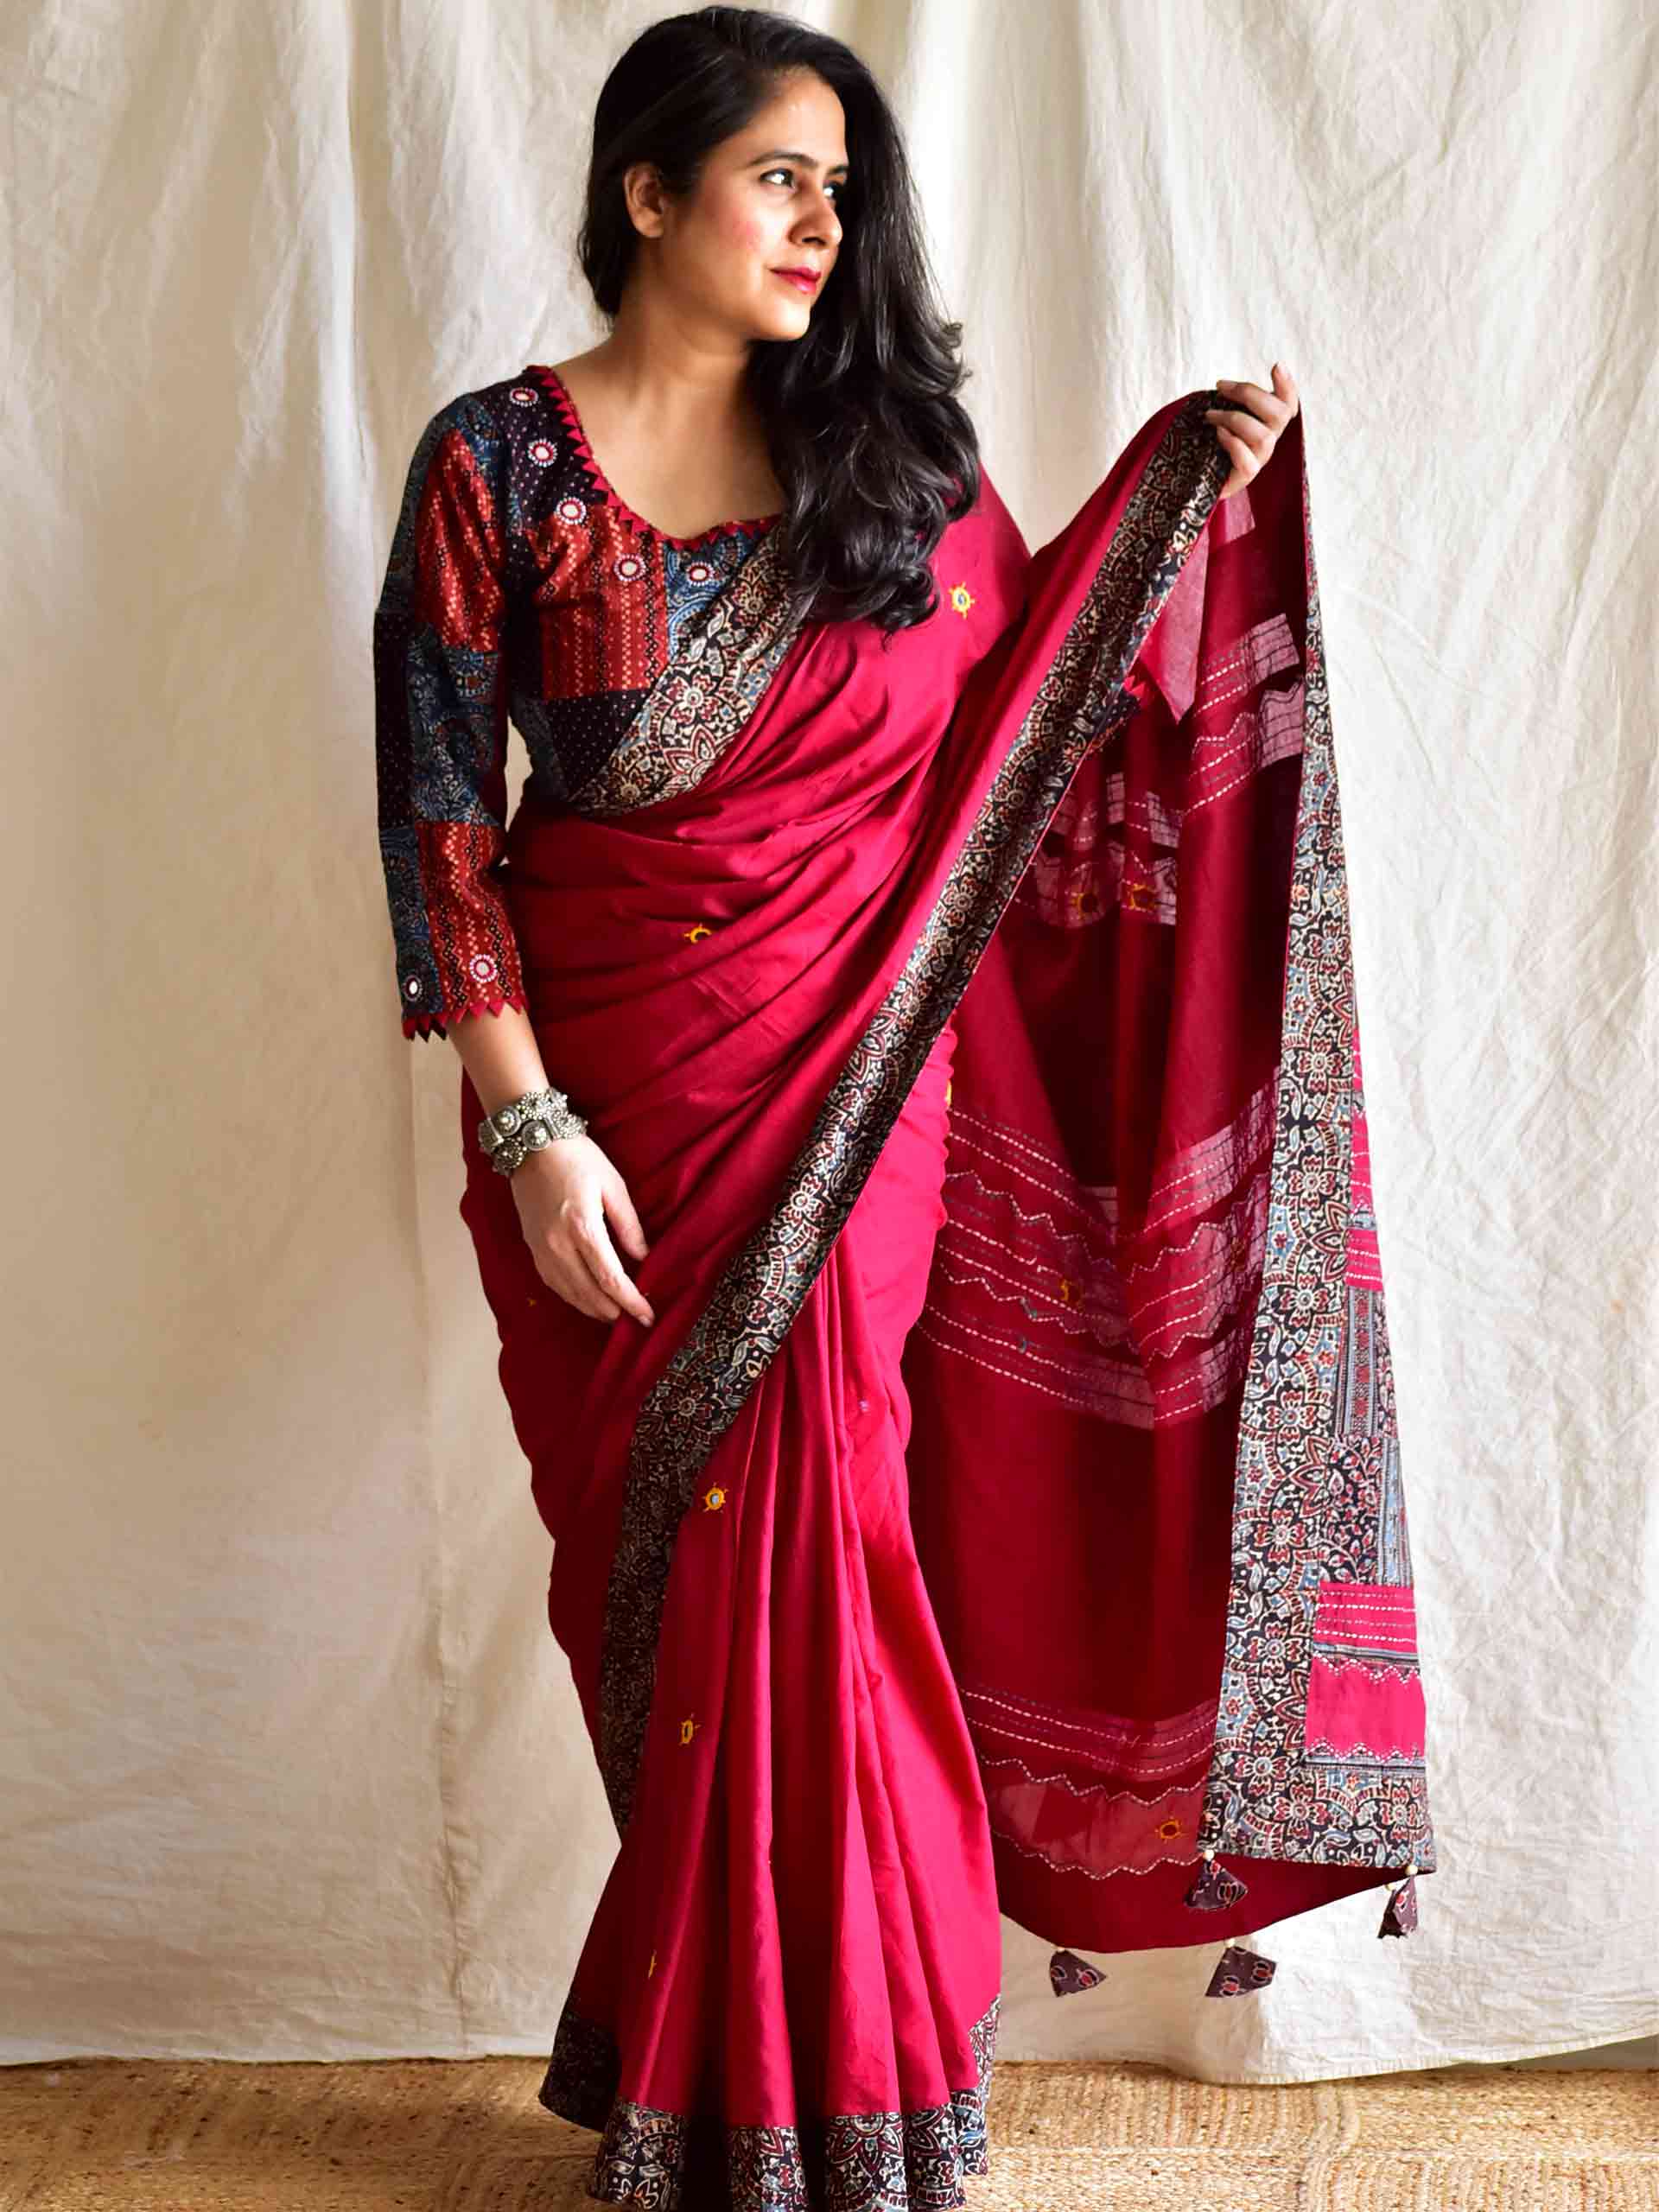 Devi - Ajrakh mirror work and patchwork saree